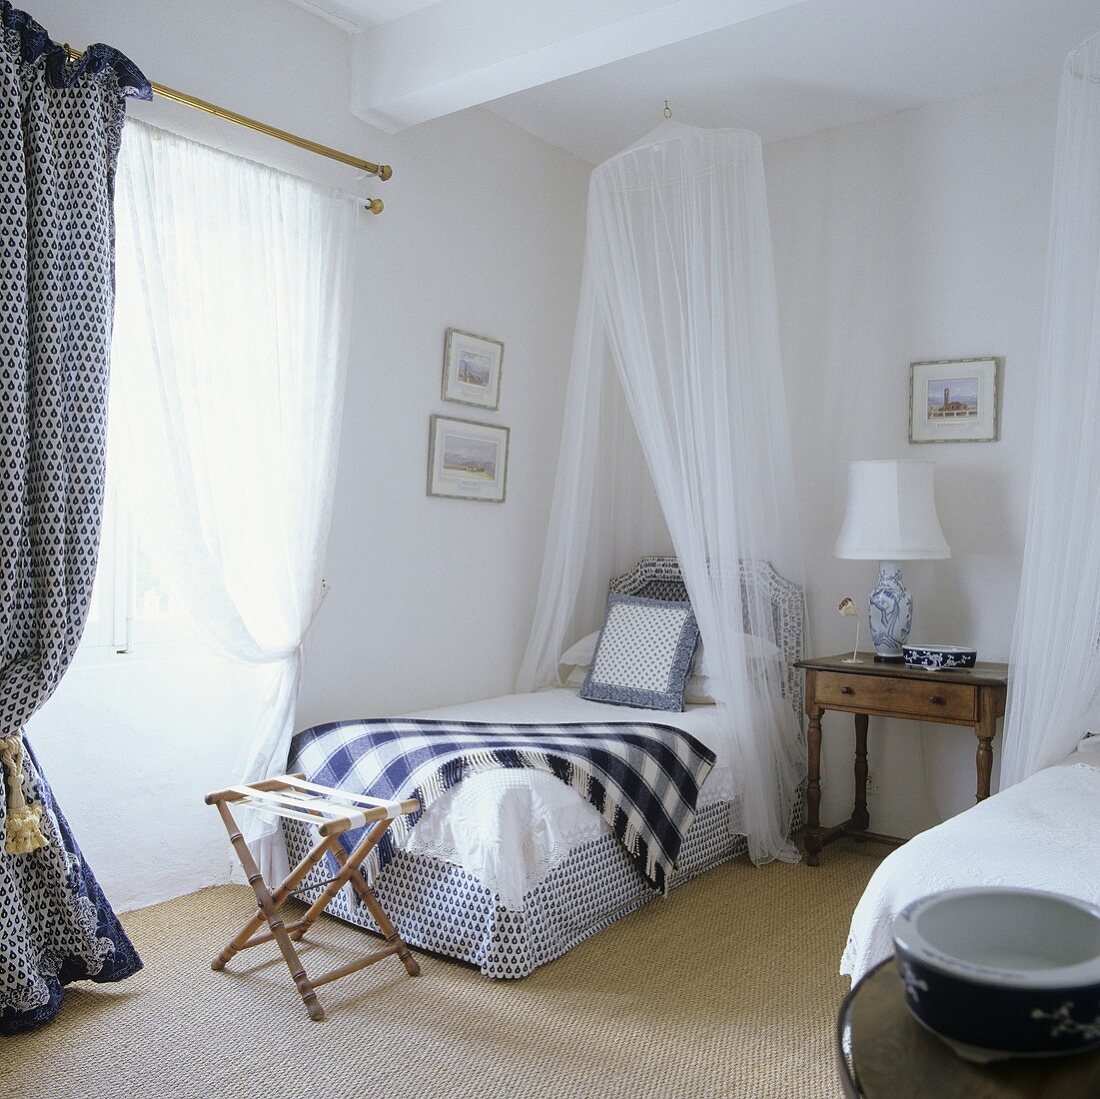 Einzelbett mit Baldachin und Hocker im Schlafraum eines provencalischem Landhauses